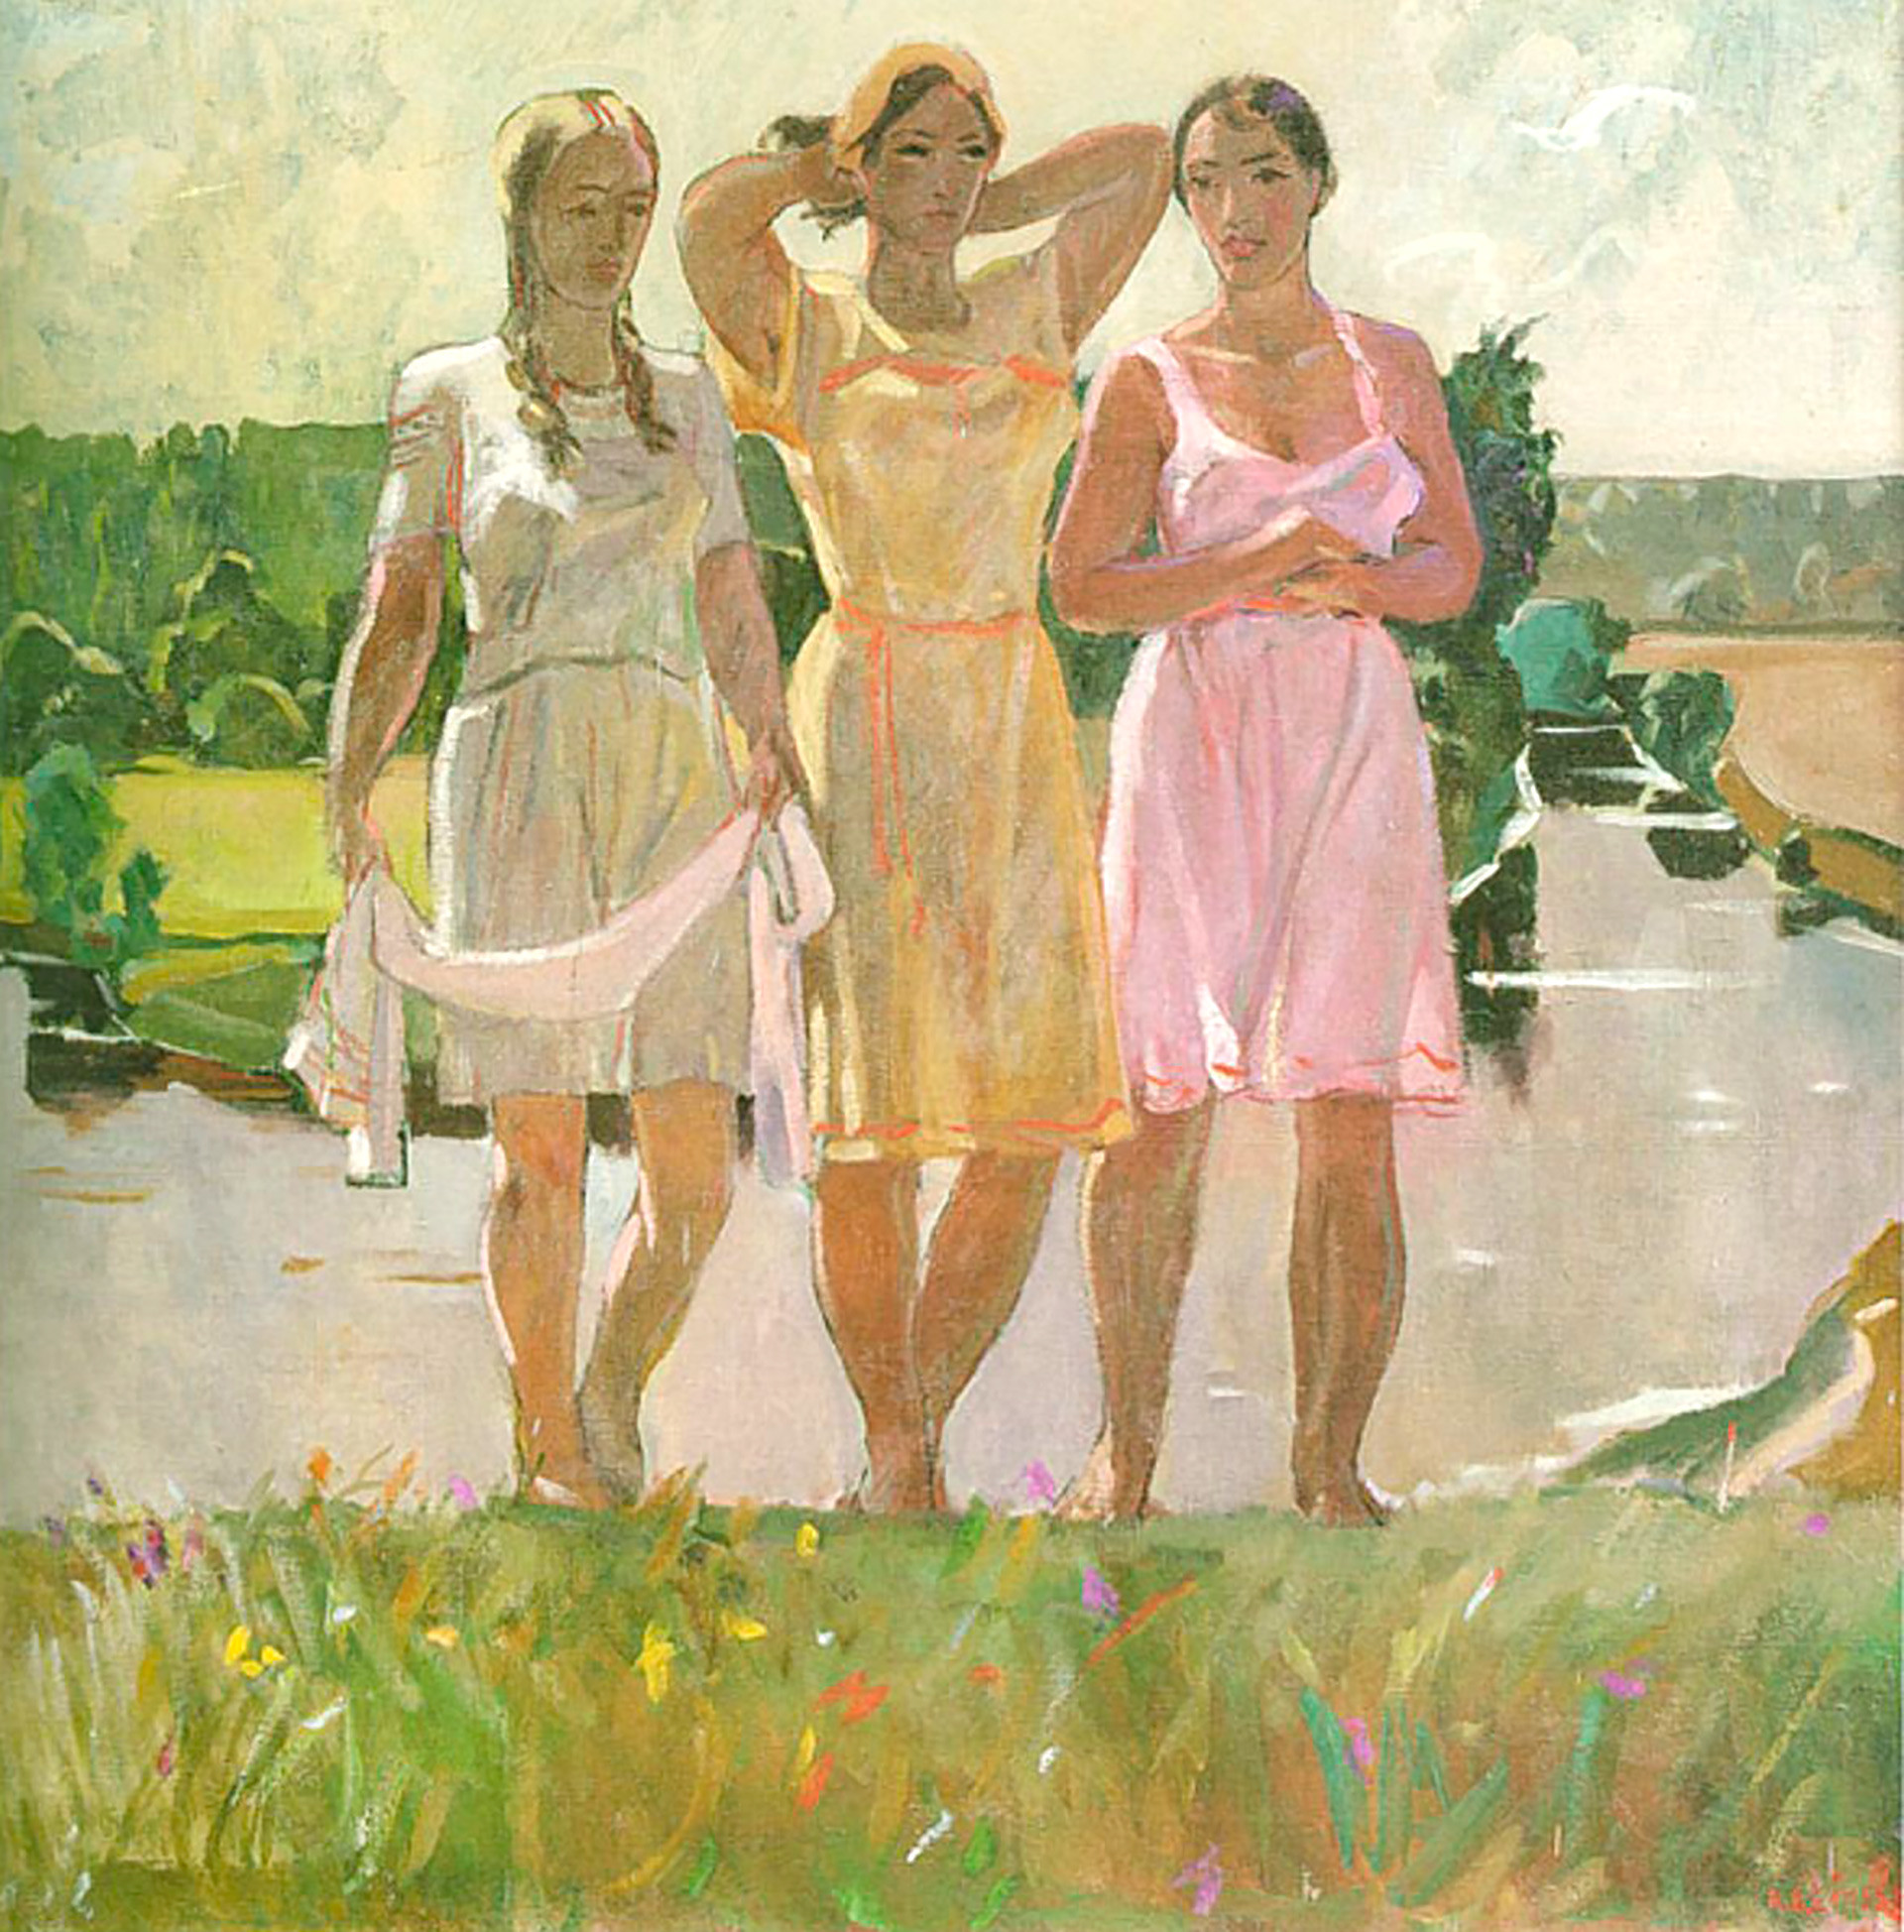 Образ женщины в произведениях. Дейнека "Ода весне. Текстильщицы", 1927.